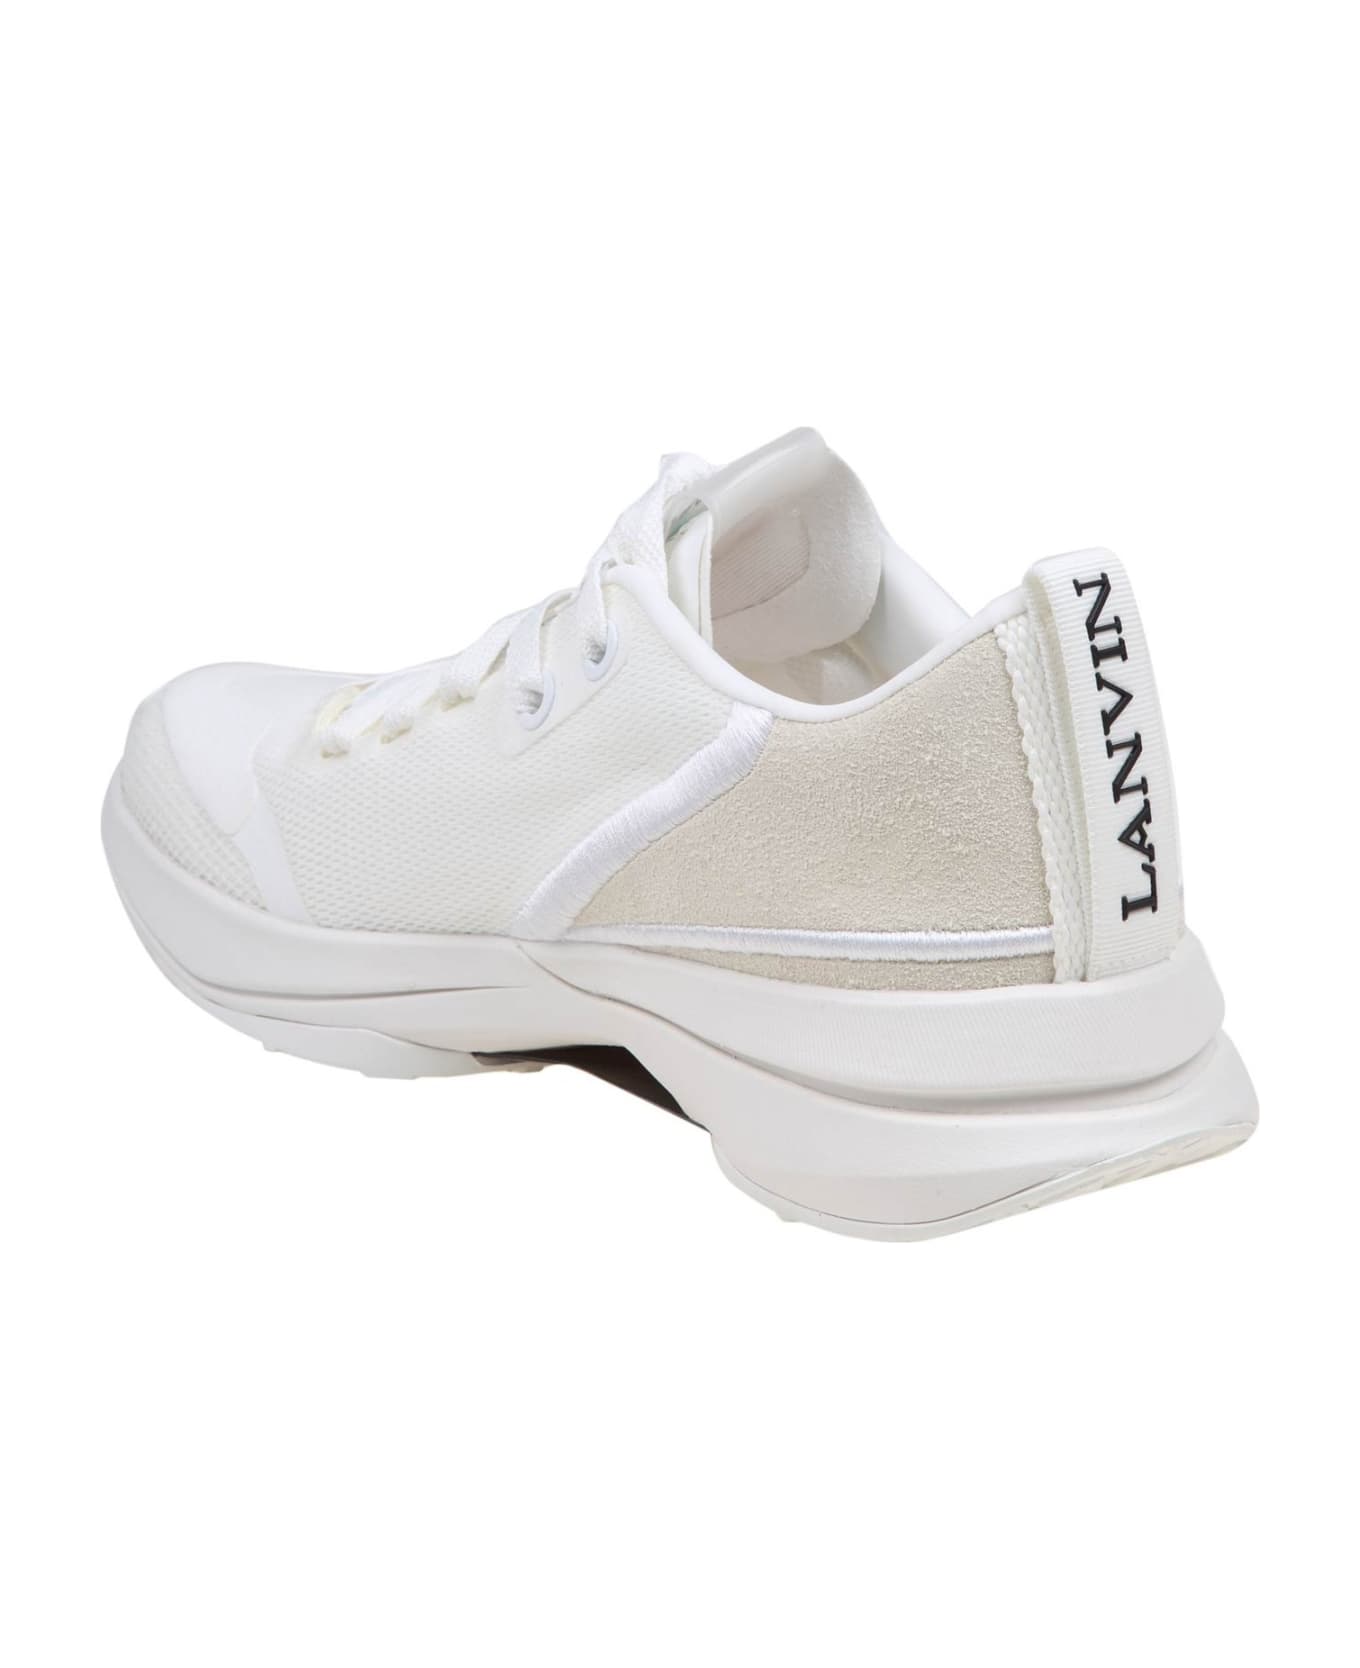 Lanvin Runner Sneakers In White Mesh - White/White